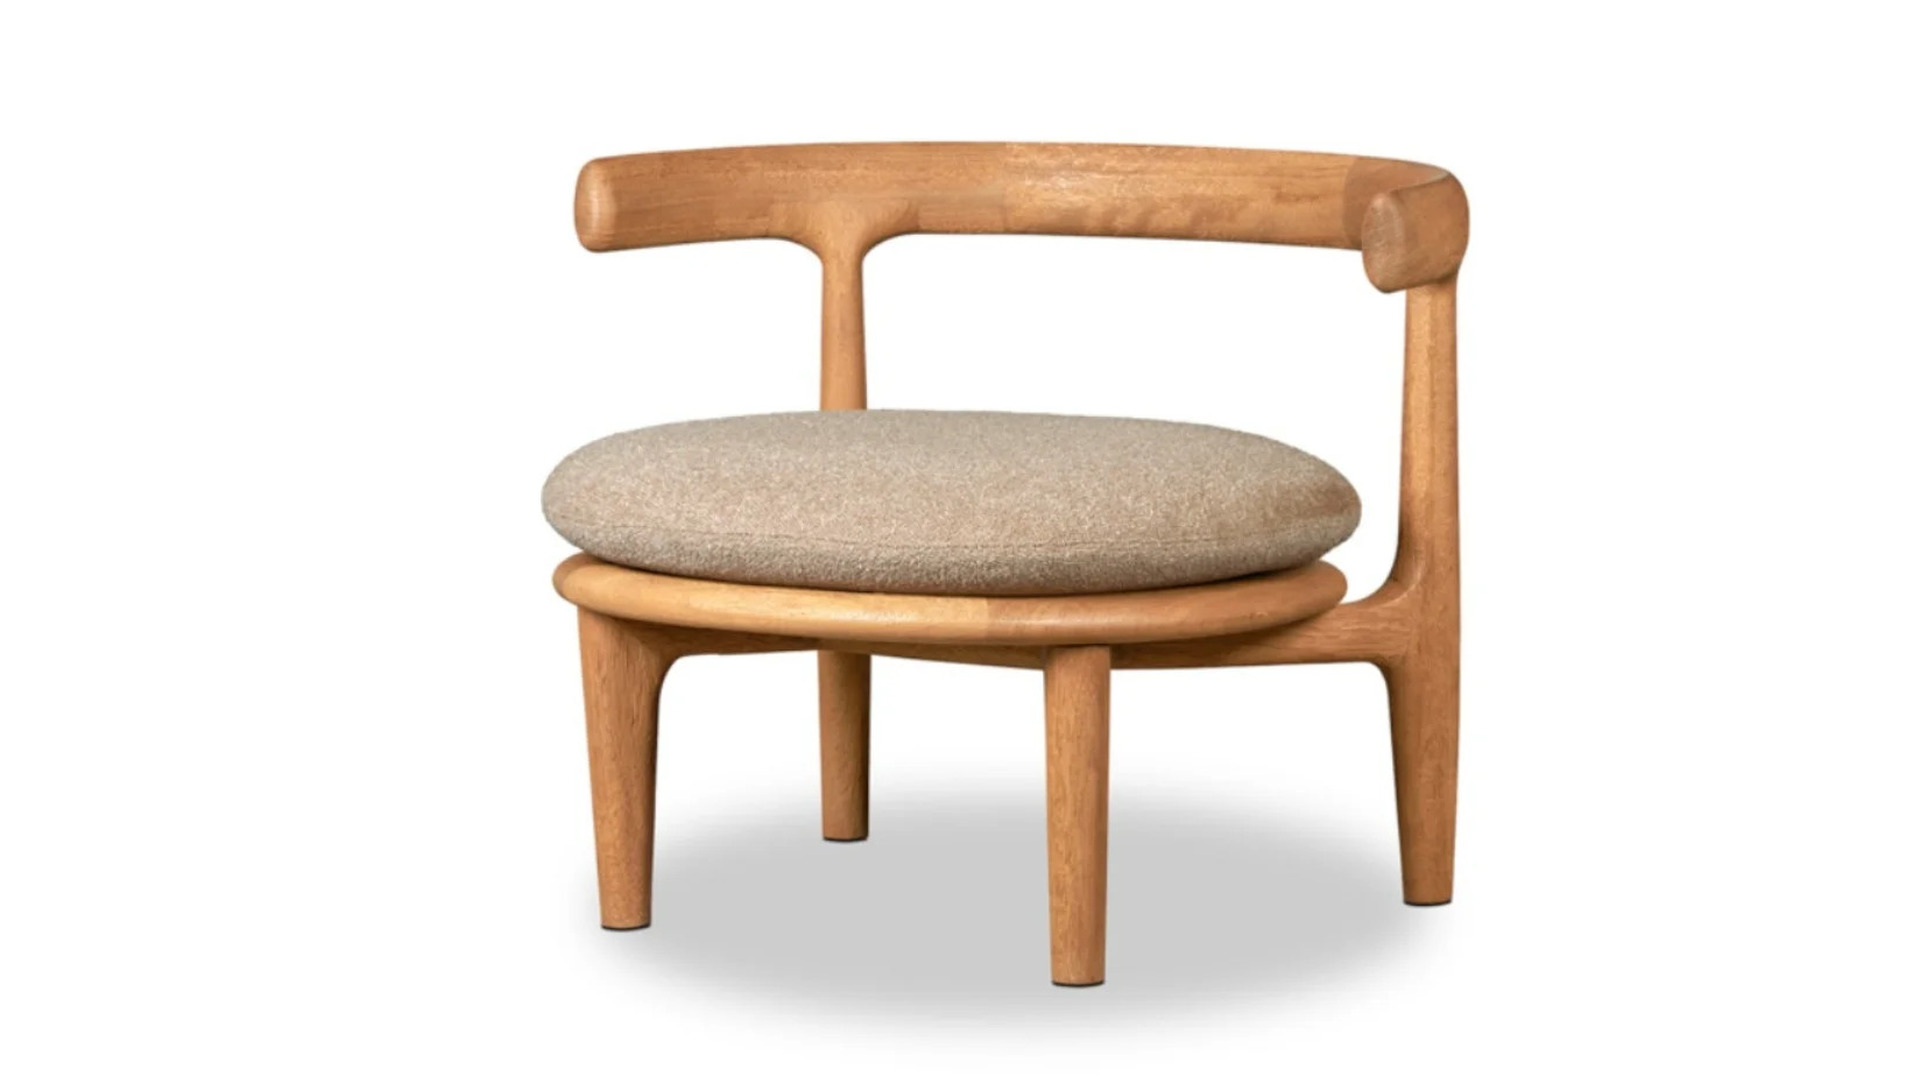 HORA Barneveld Baxter Himba fauteuil armstoel arm stoel easy chair 3.jpg